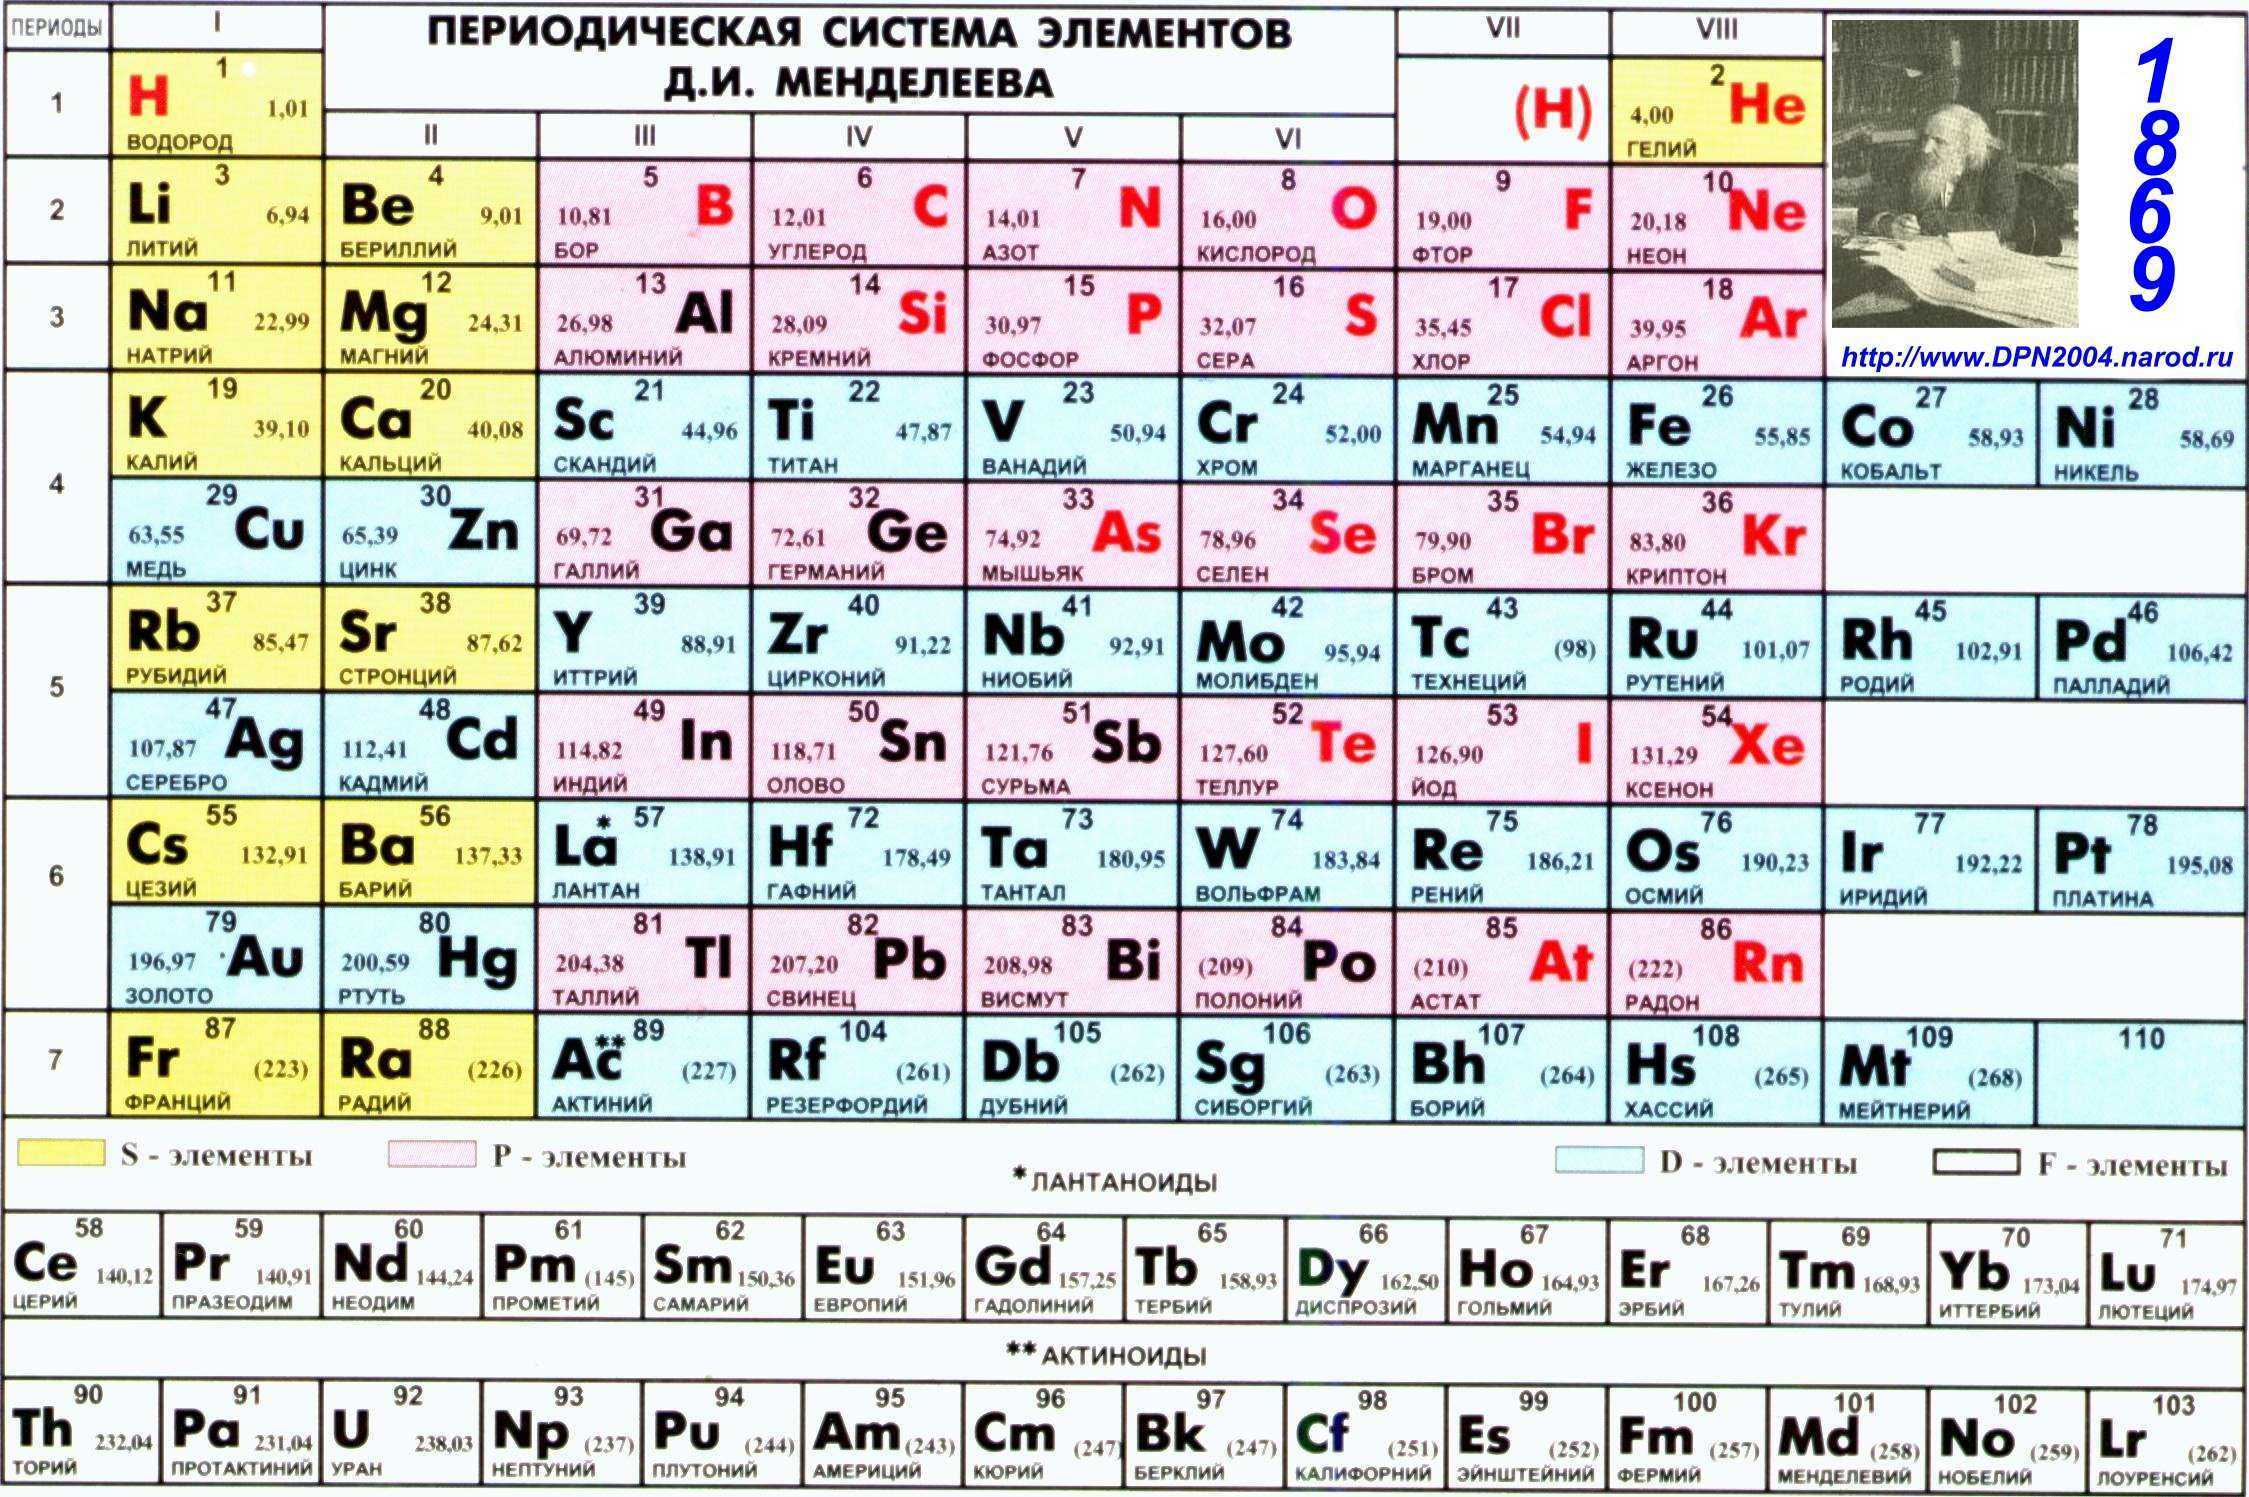 Определить элемент y. Периодическая таблица Менделеева. Показать периодическую таблицу Менделеева. Первые 20 элементов таблицы Менделеева.